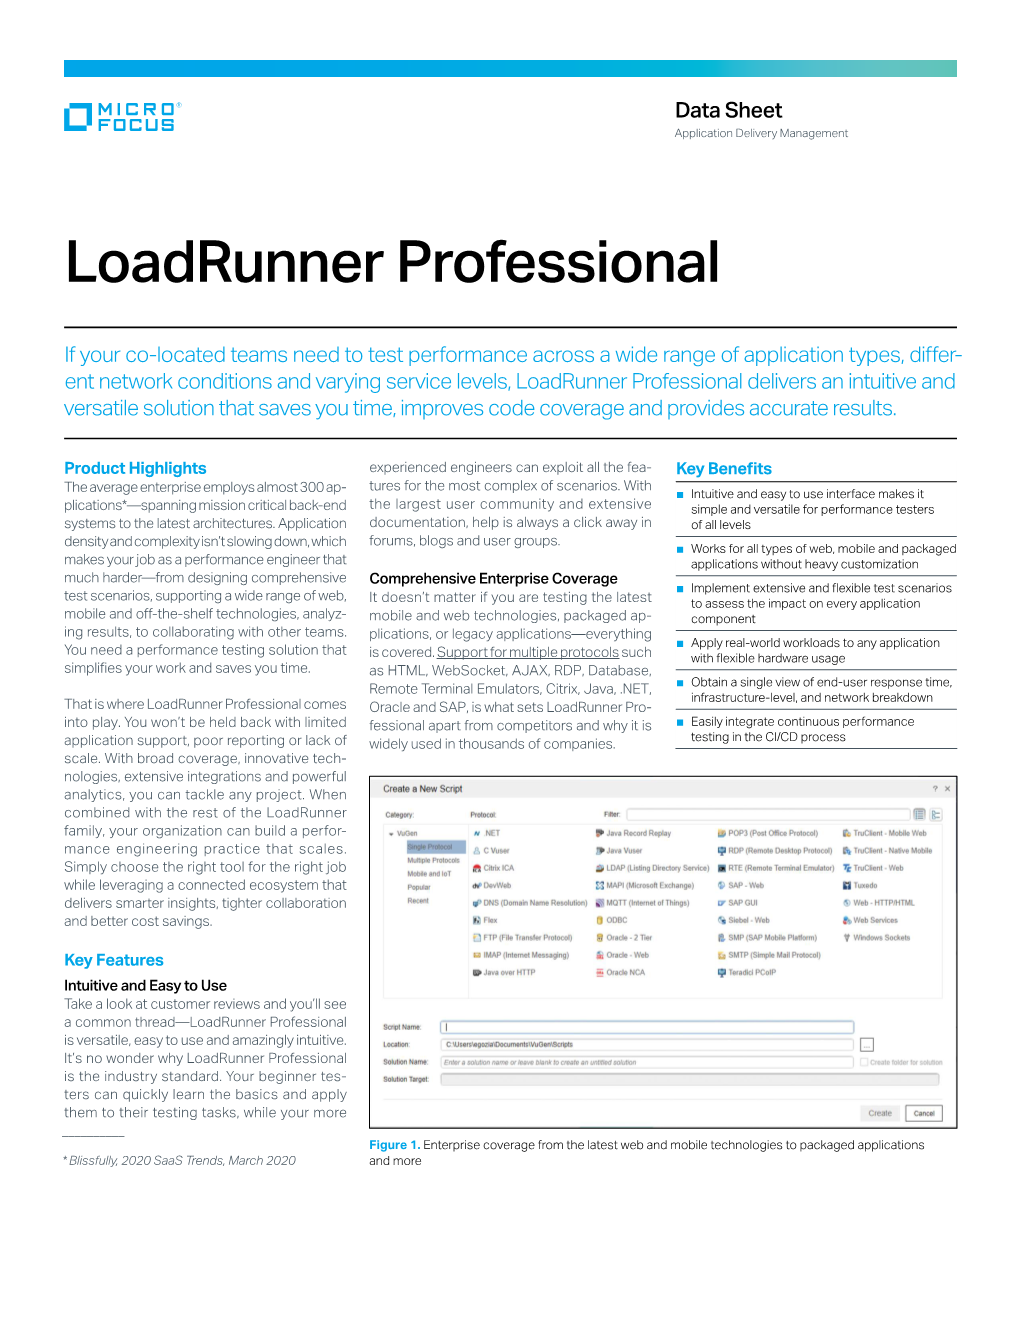 Loadrunner Professional Data Sheet